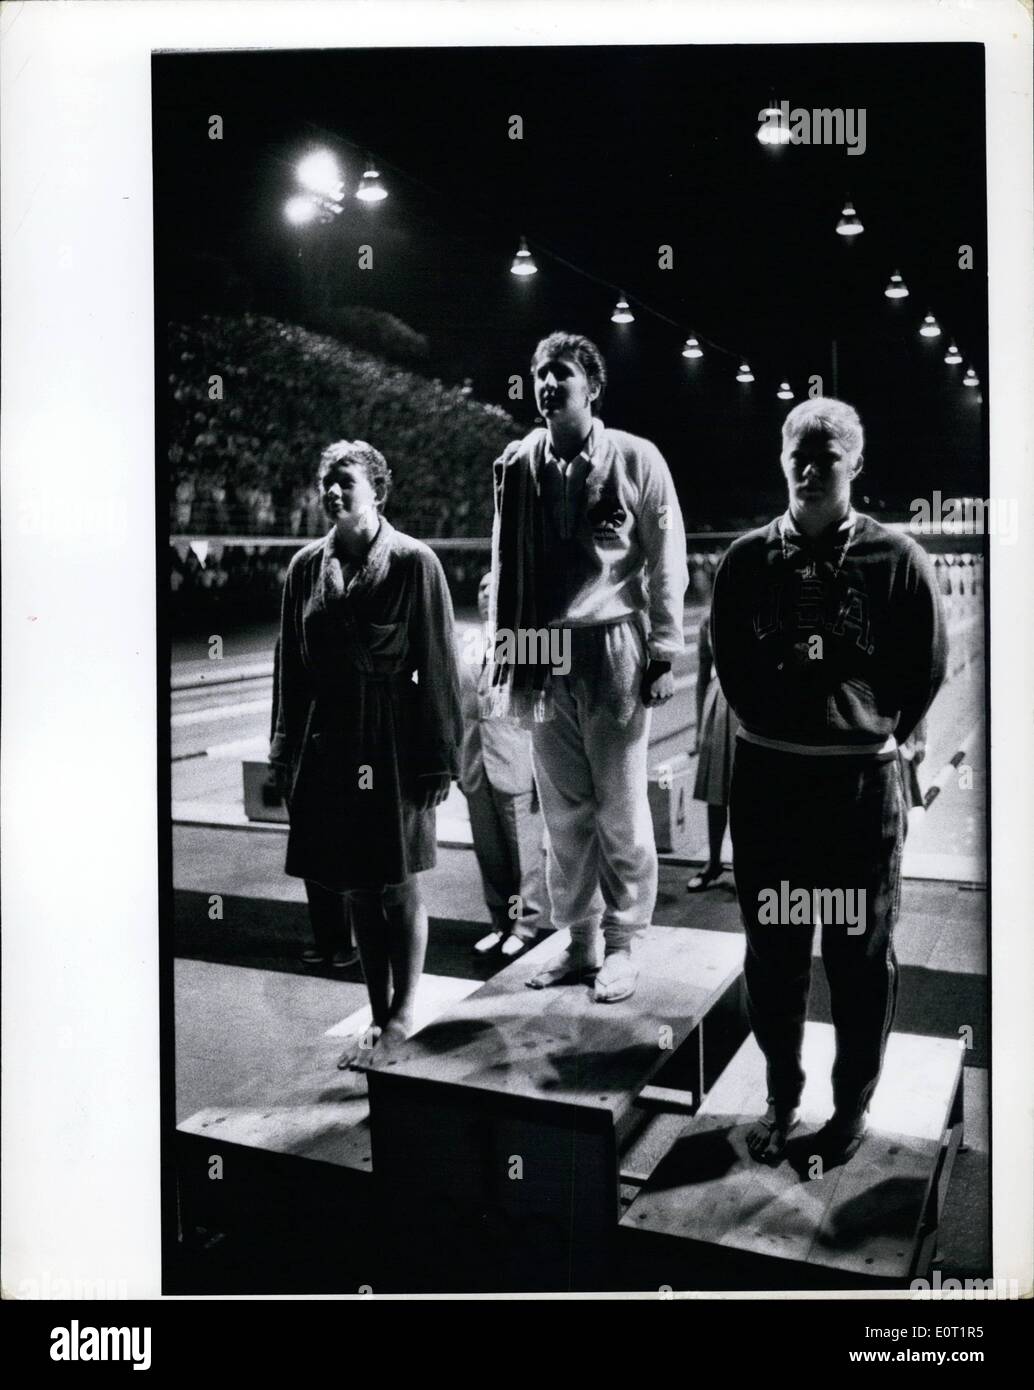 Juillet 07, 1960 Jeux Olympiques de Rome 1960 - 100 mètres style libre natation Dawn Fraser (centre) Chris von Saltza (droite) Steward (à gauche) Banque D'Images